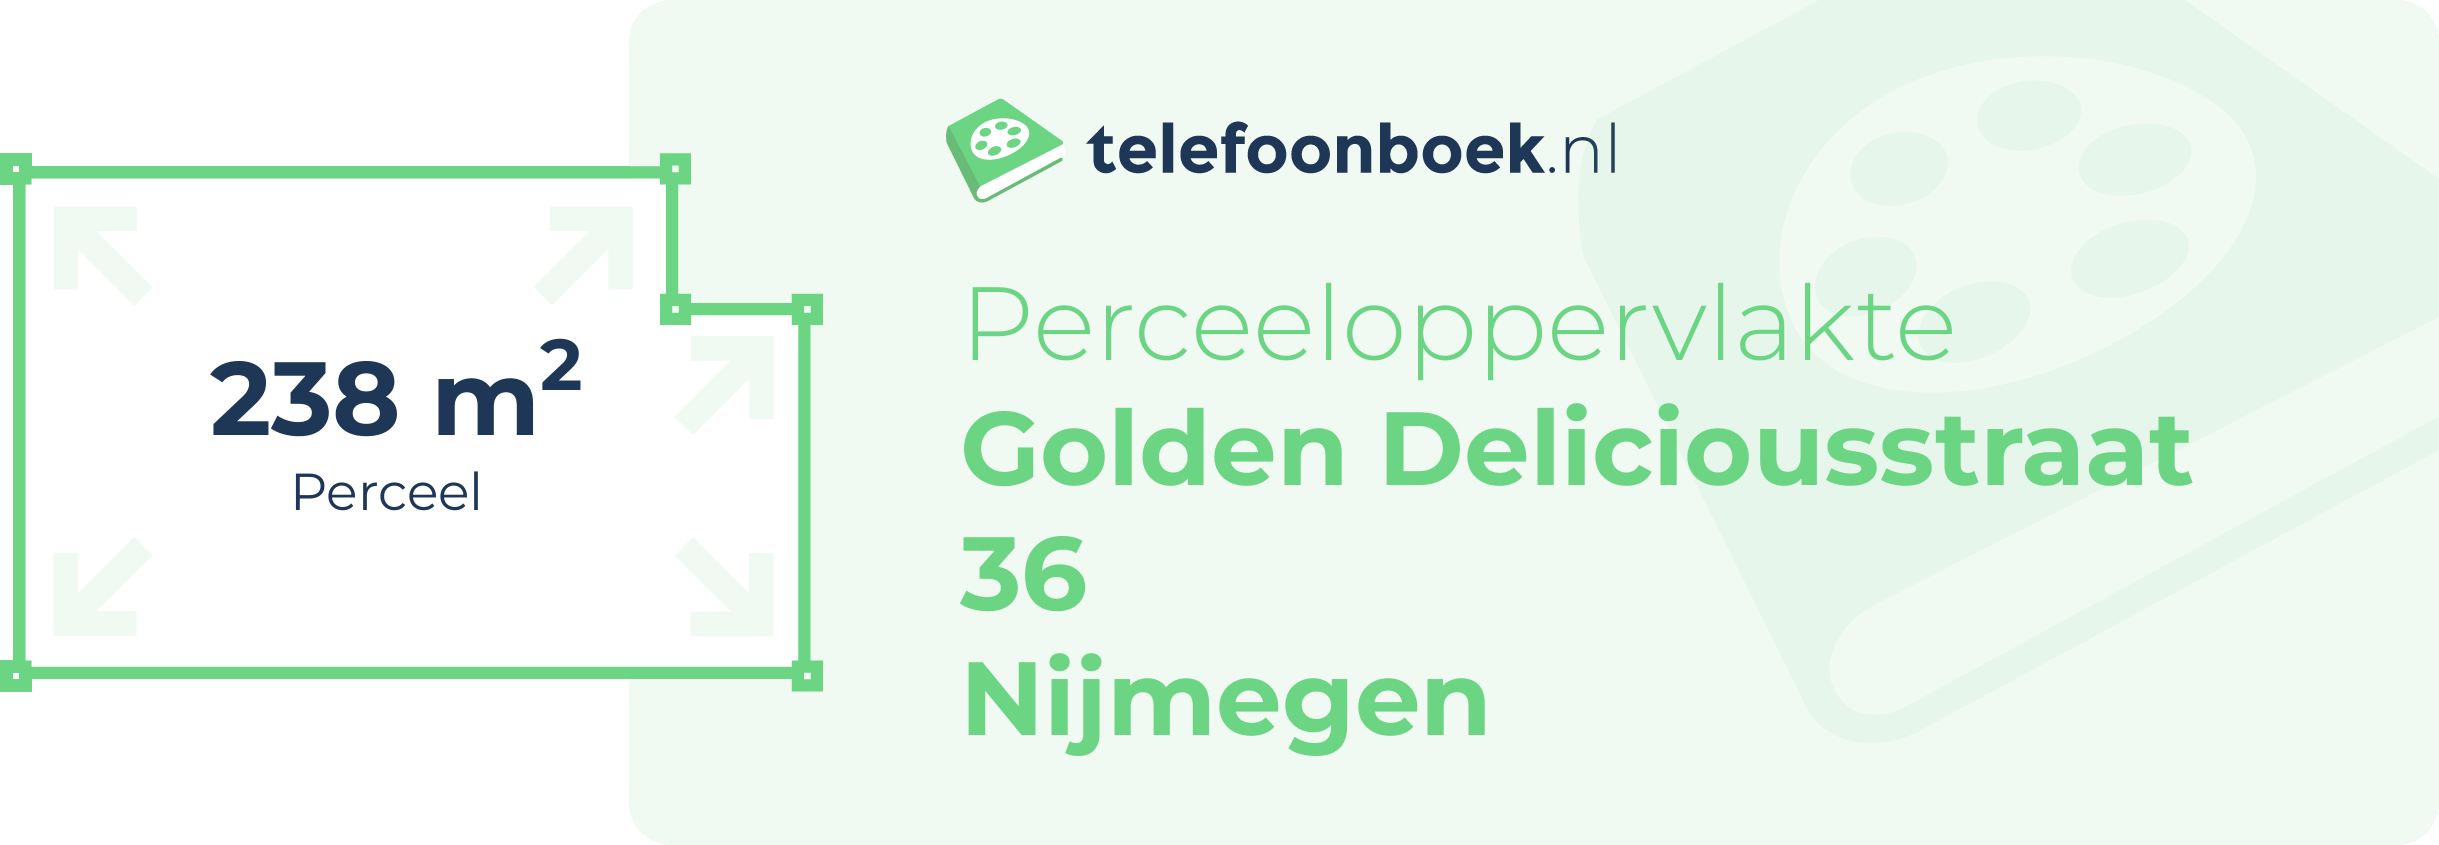 Perceeloppervlakte Golden Deliciousstraat 36 Nijmegen